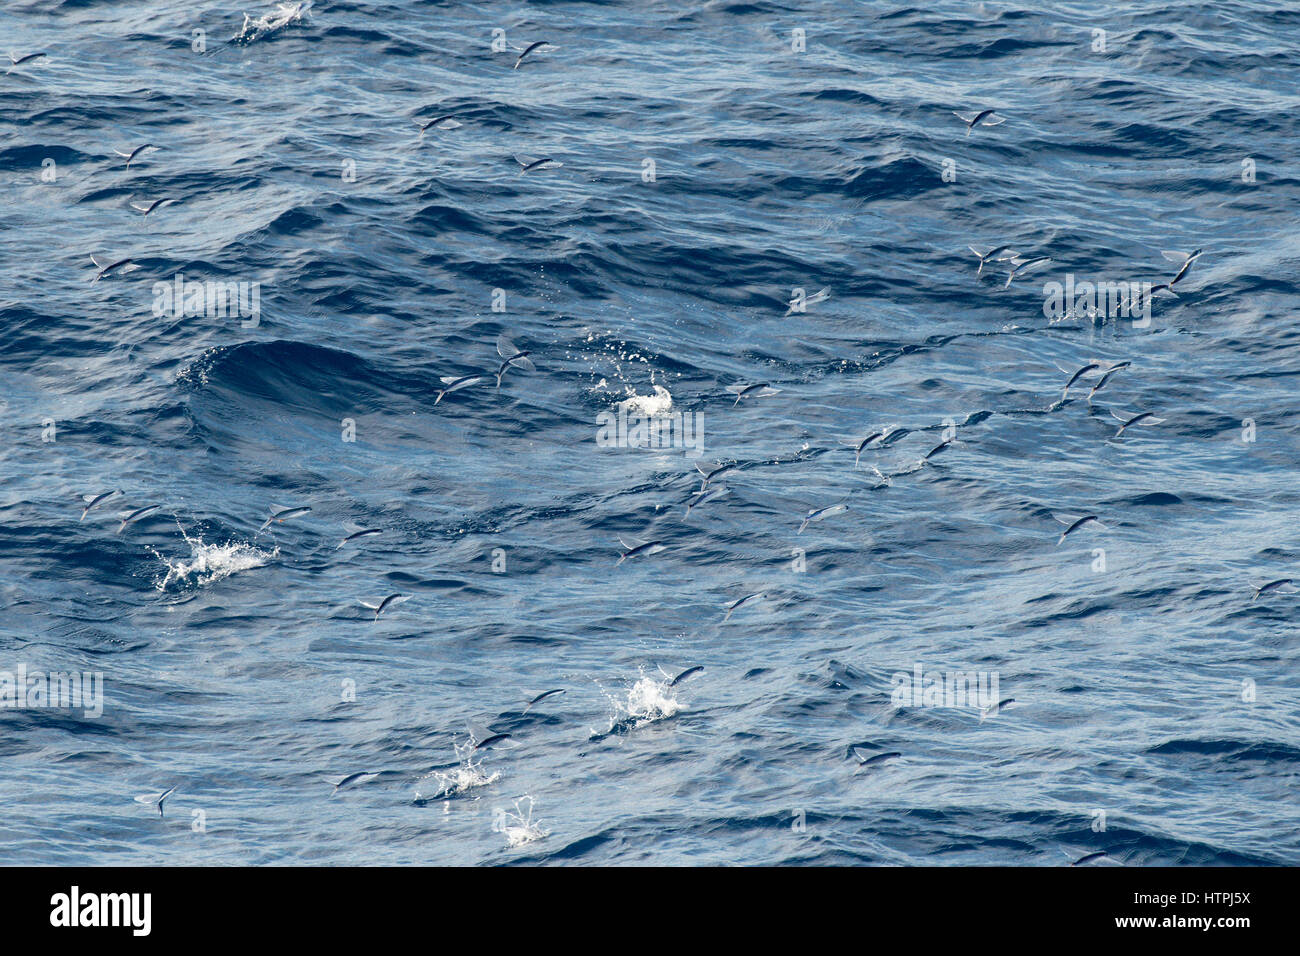 Gruppe, Schule oder Schwarm fliegender Fisch, in der Luft, wissenschaftlicher Name unbekannt, mehrere hundert Meilen vor Mauretanien, Afrika, Atlantik. Stockfoto